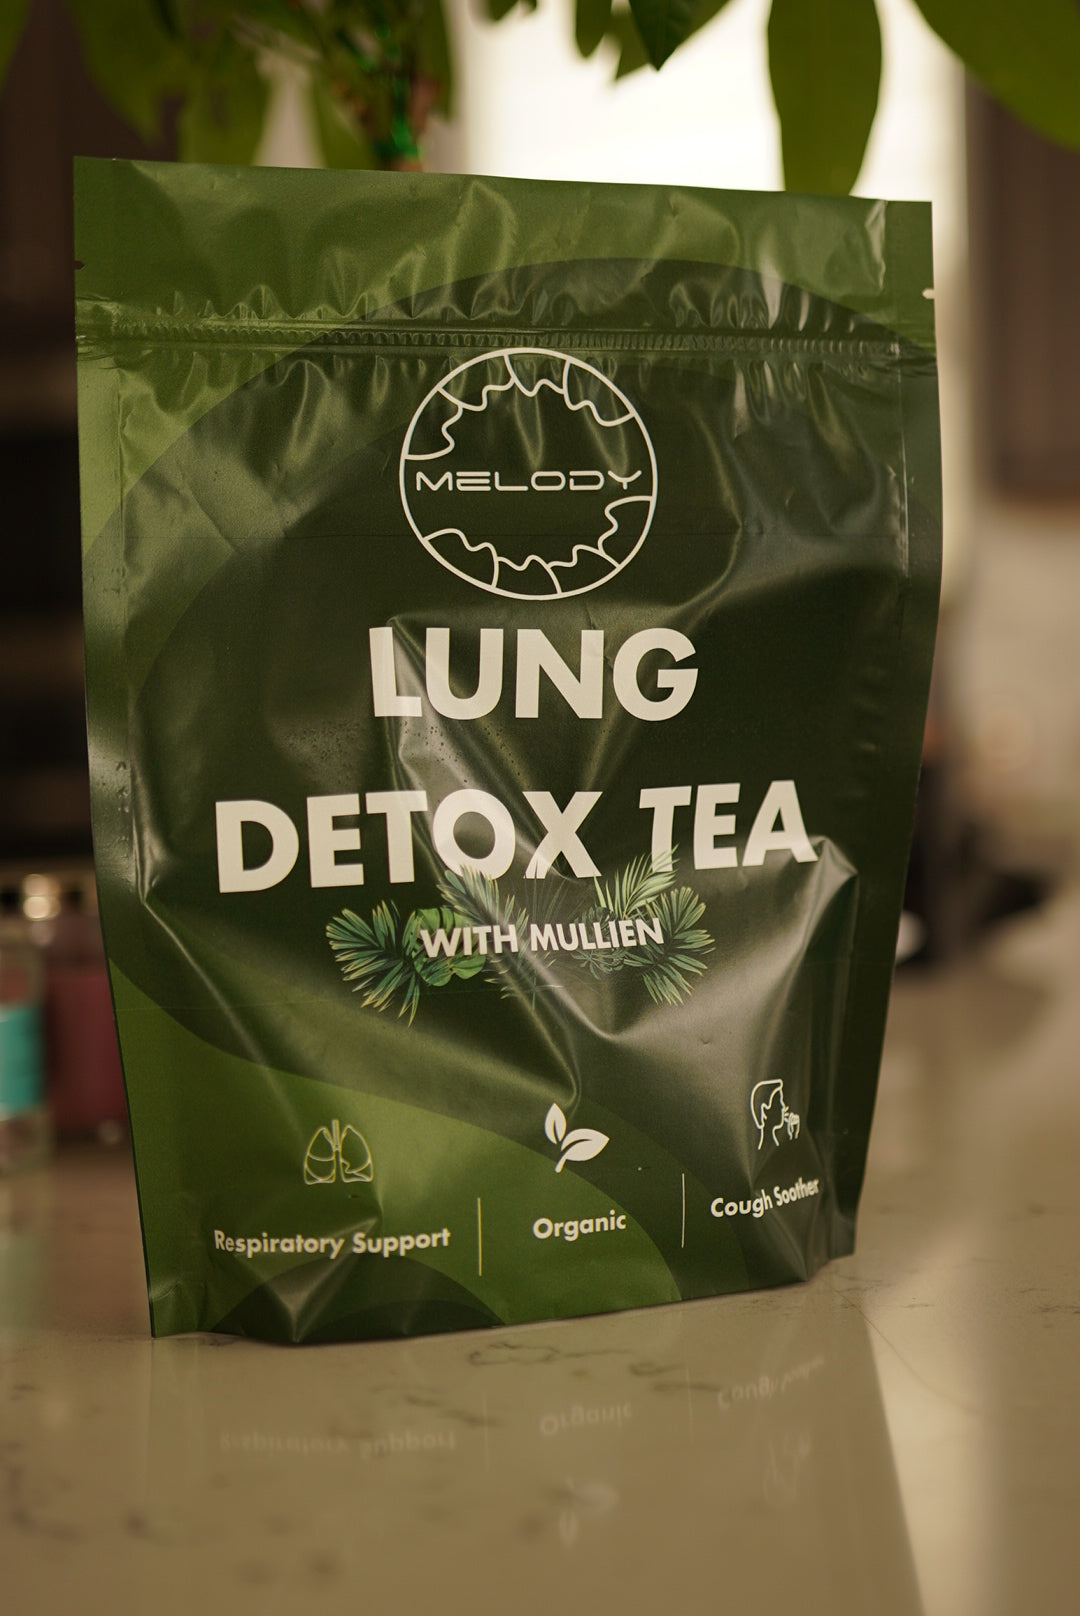 Good Lung Detox Tea